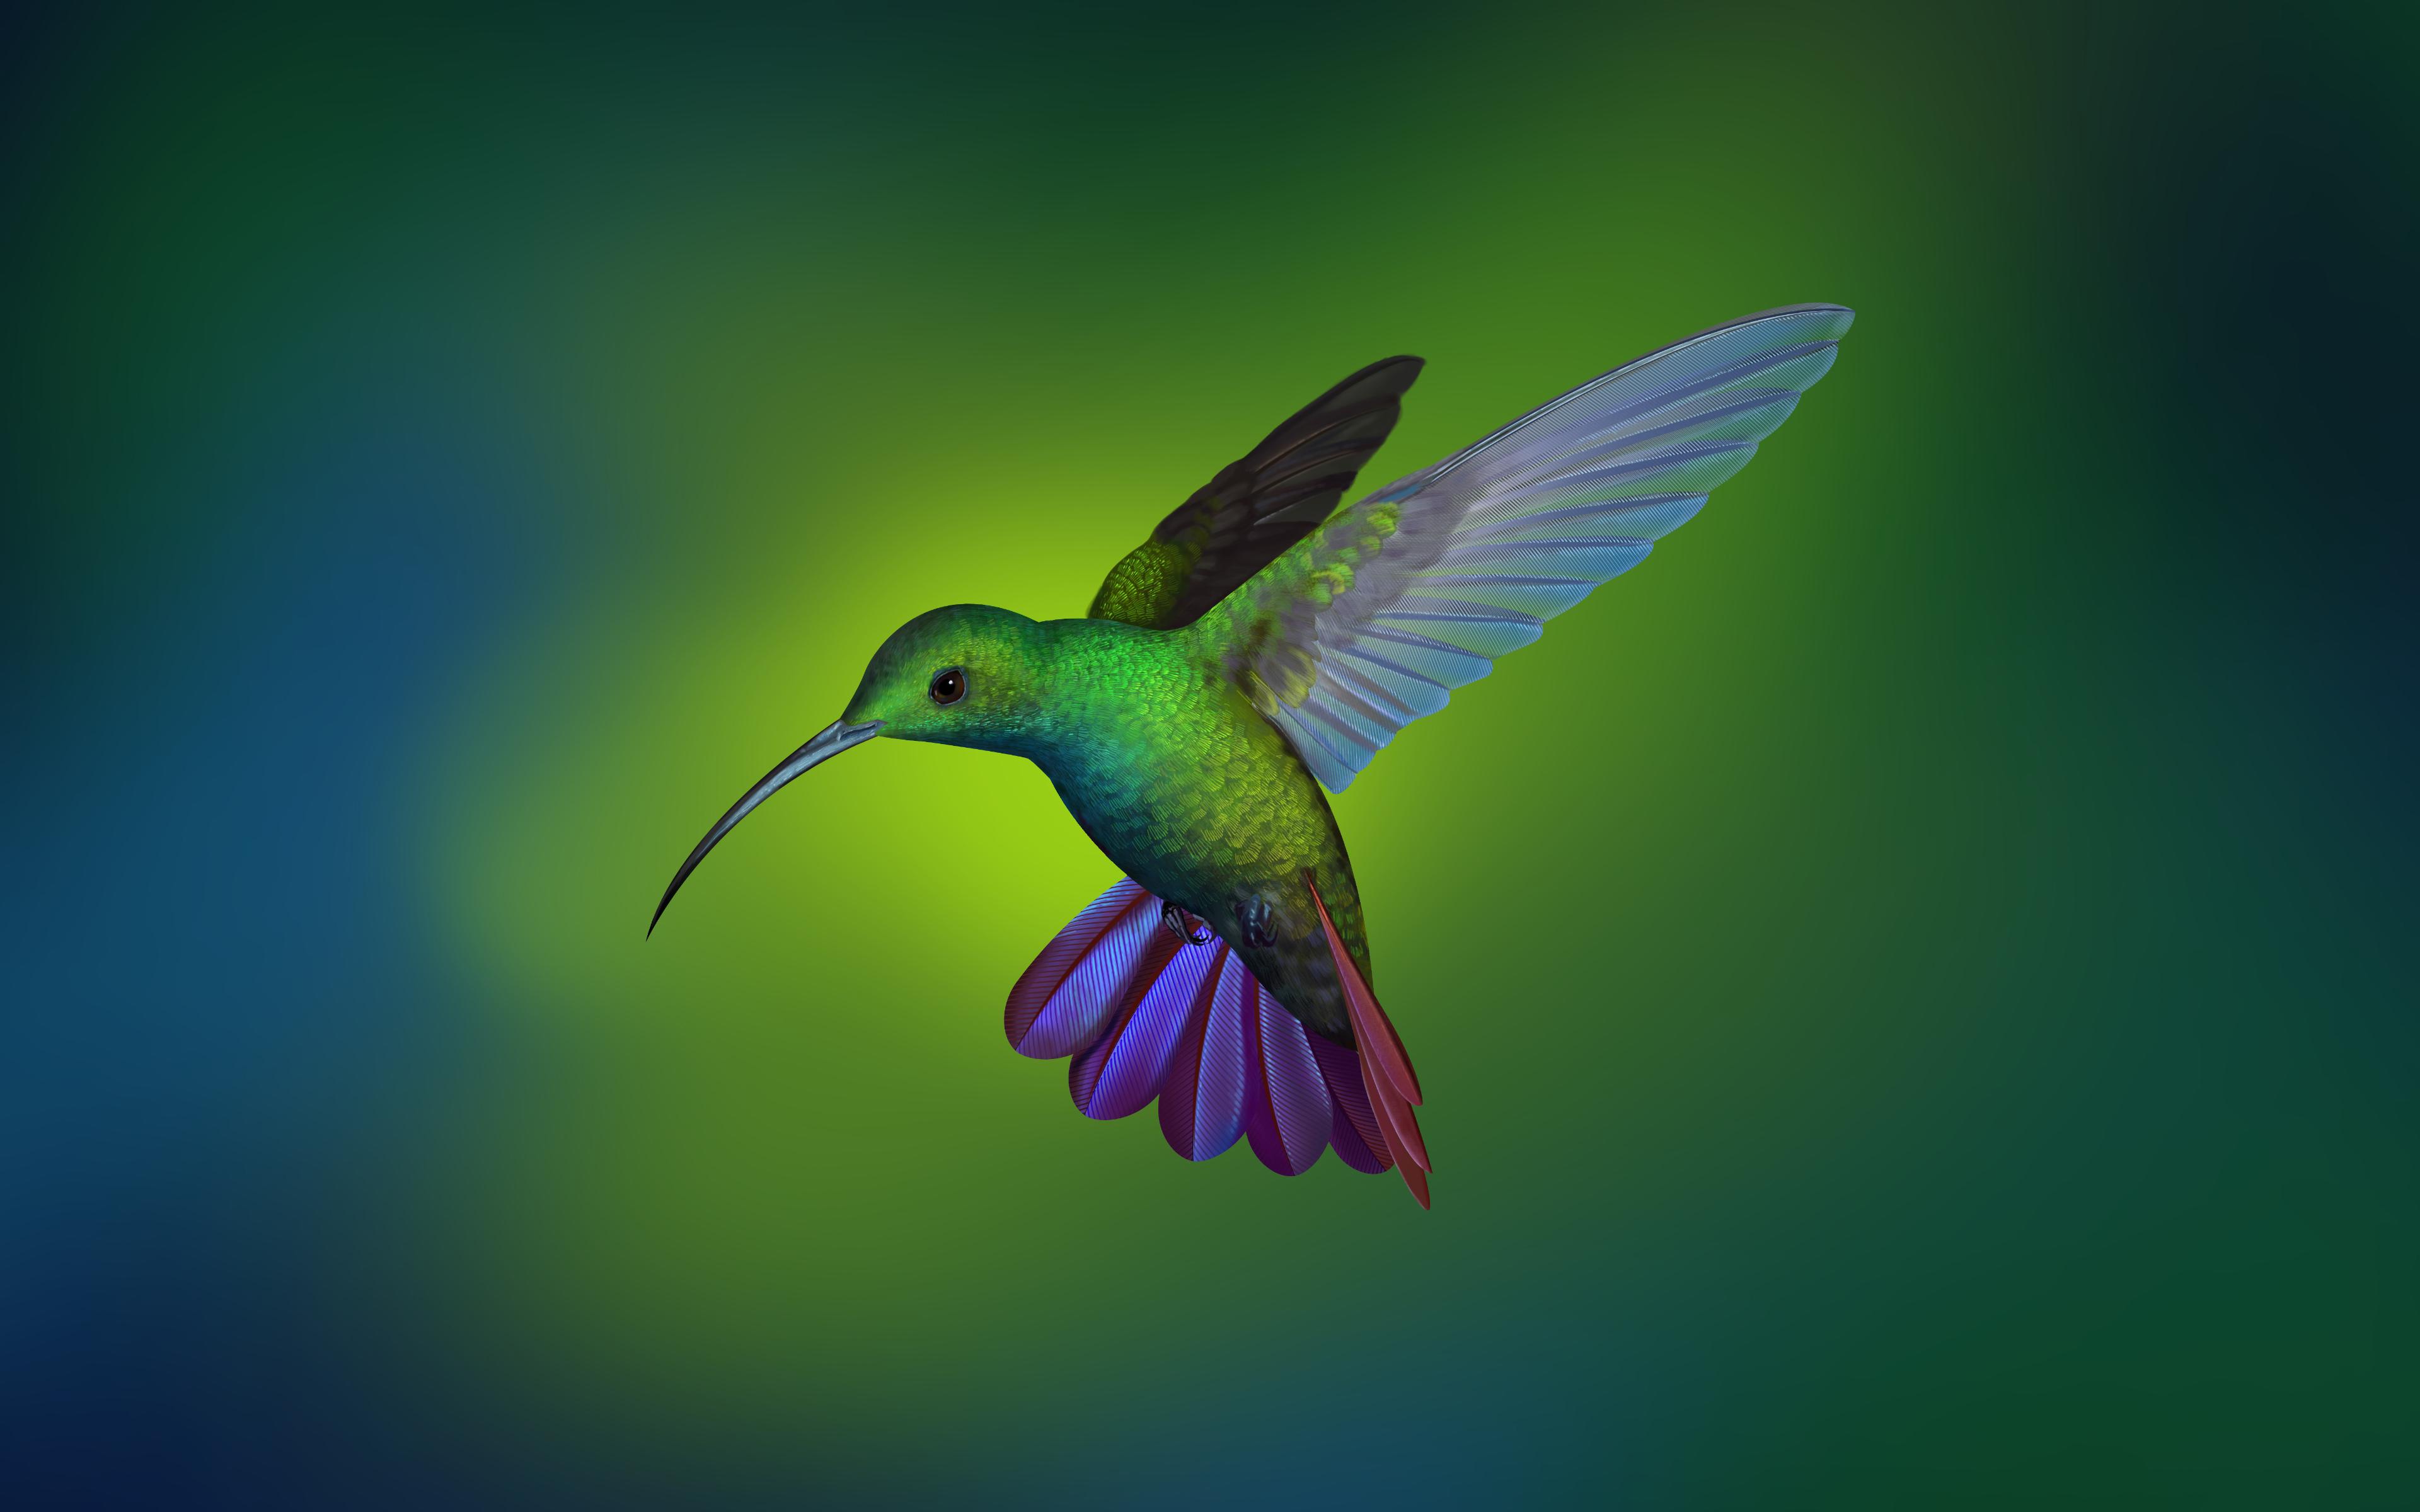 Hummingbird 4k , HD Wallpaper & Backgrounds